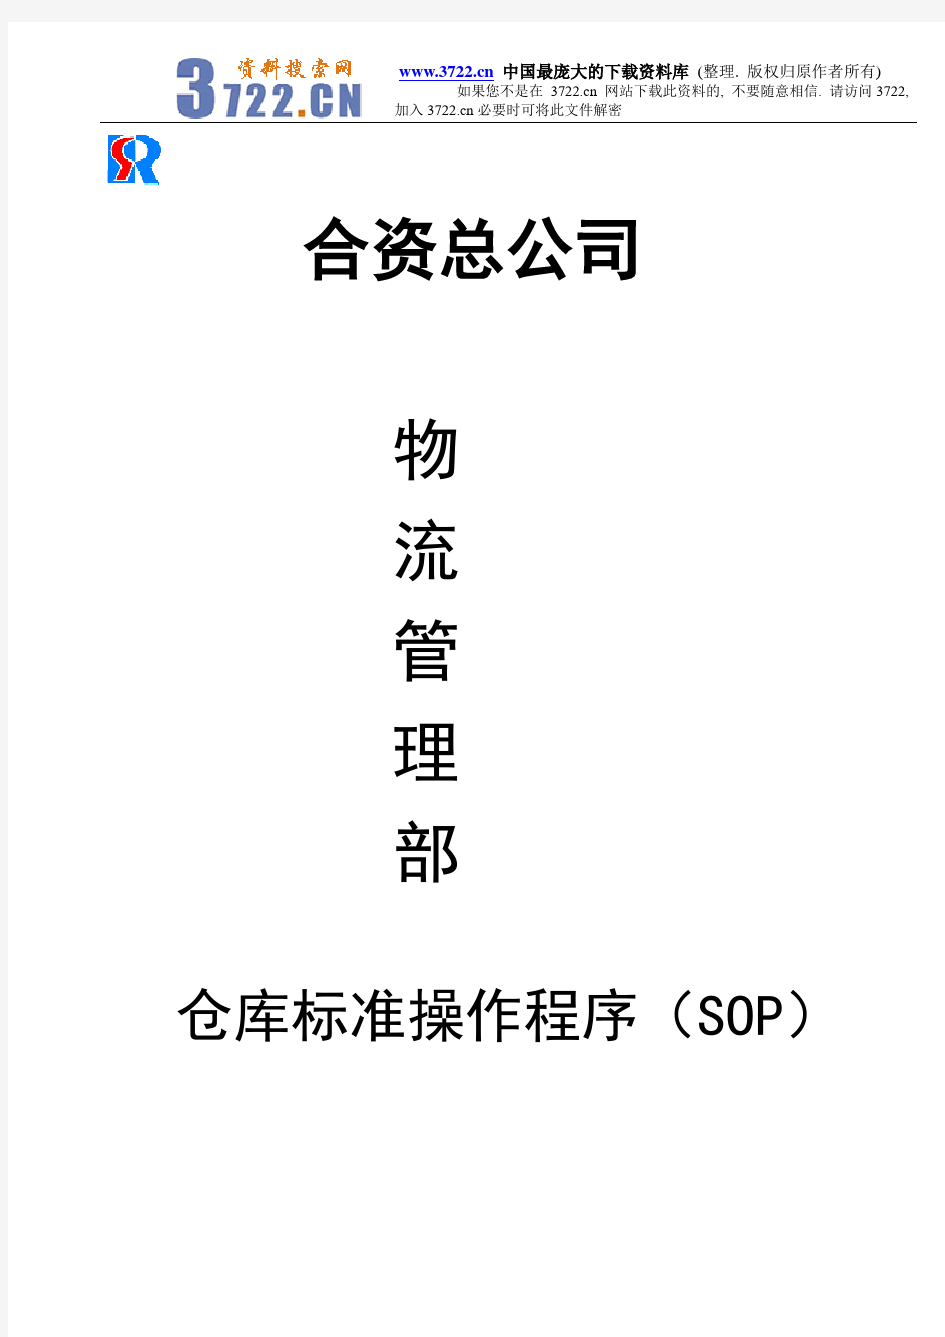 宝供总公司物流管理部仓库标准操作程序(SOP)(DOC 72)